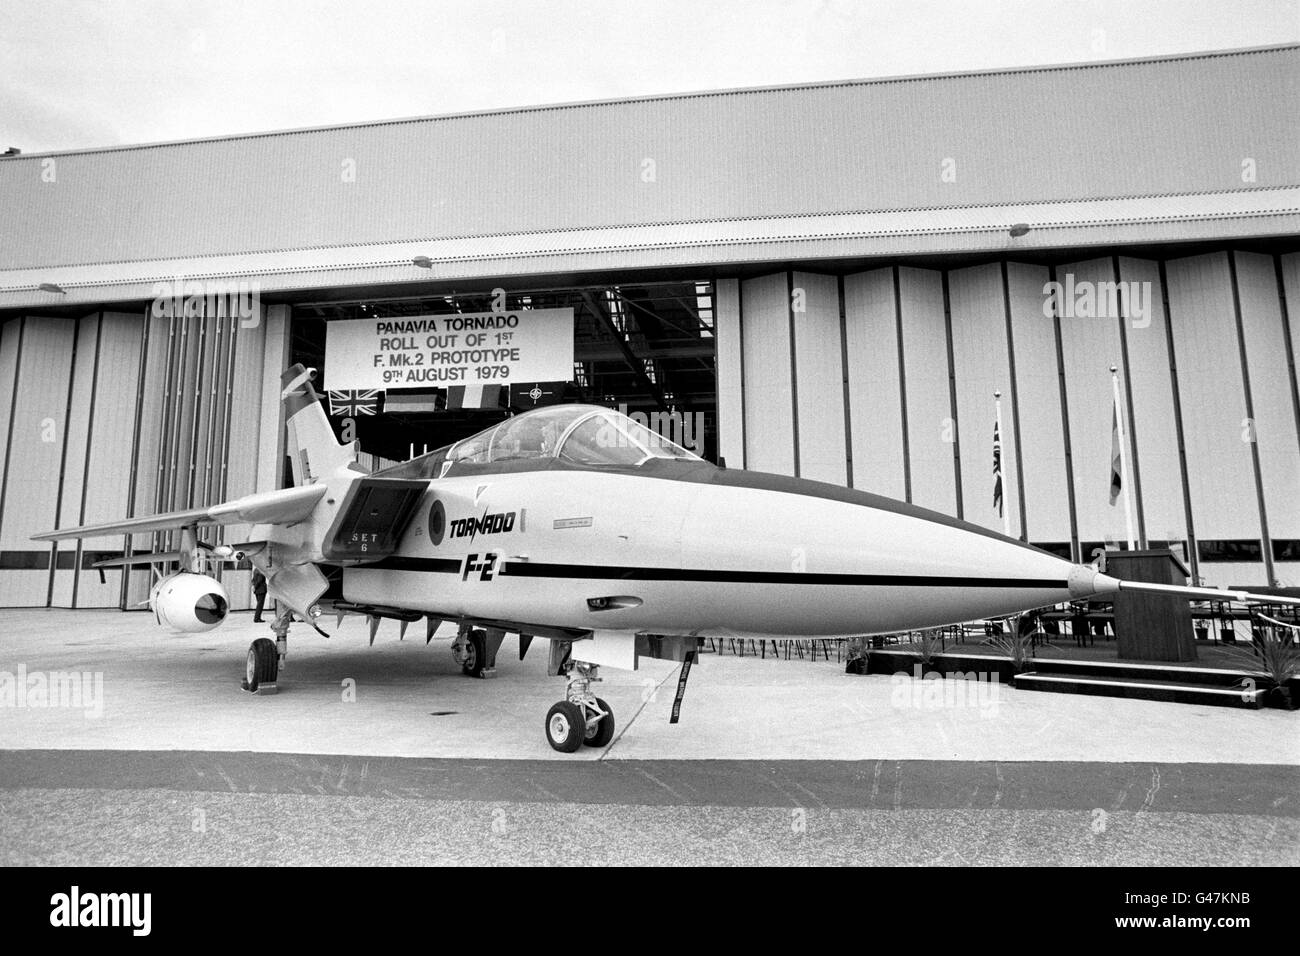 Avion de défense aérienne de 9 millions de livres, le Tornado F2 est déployé pour la première fois. Banque D'Images